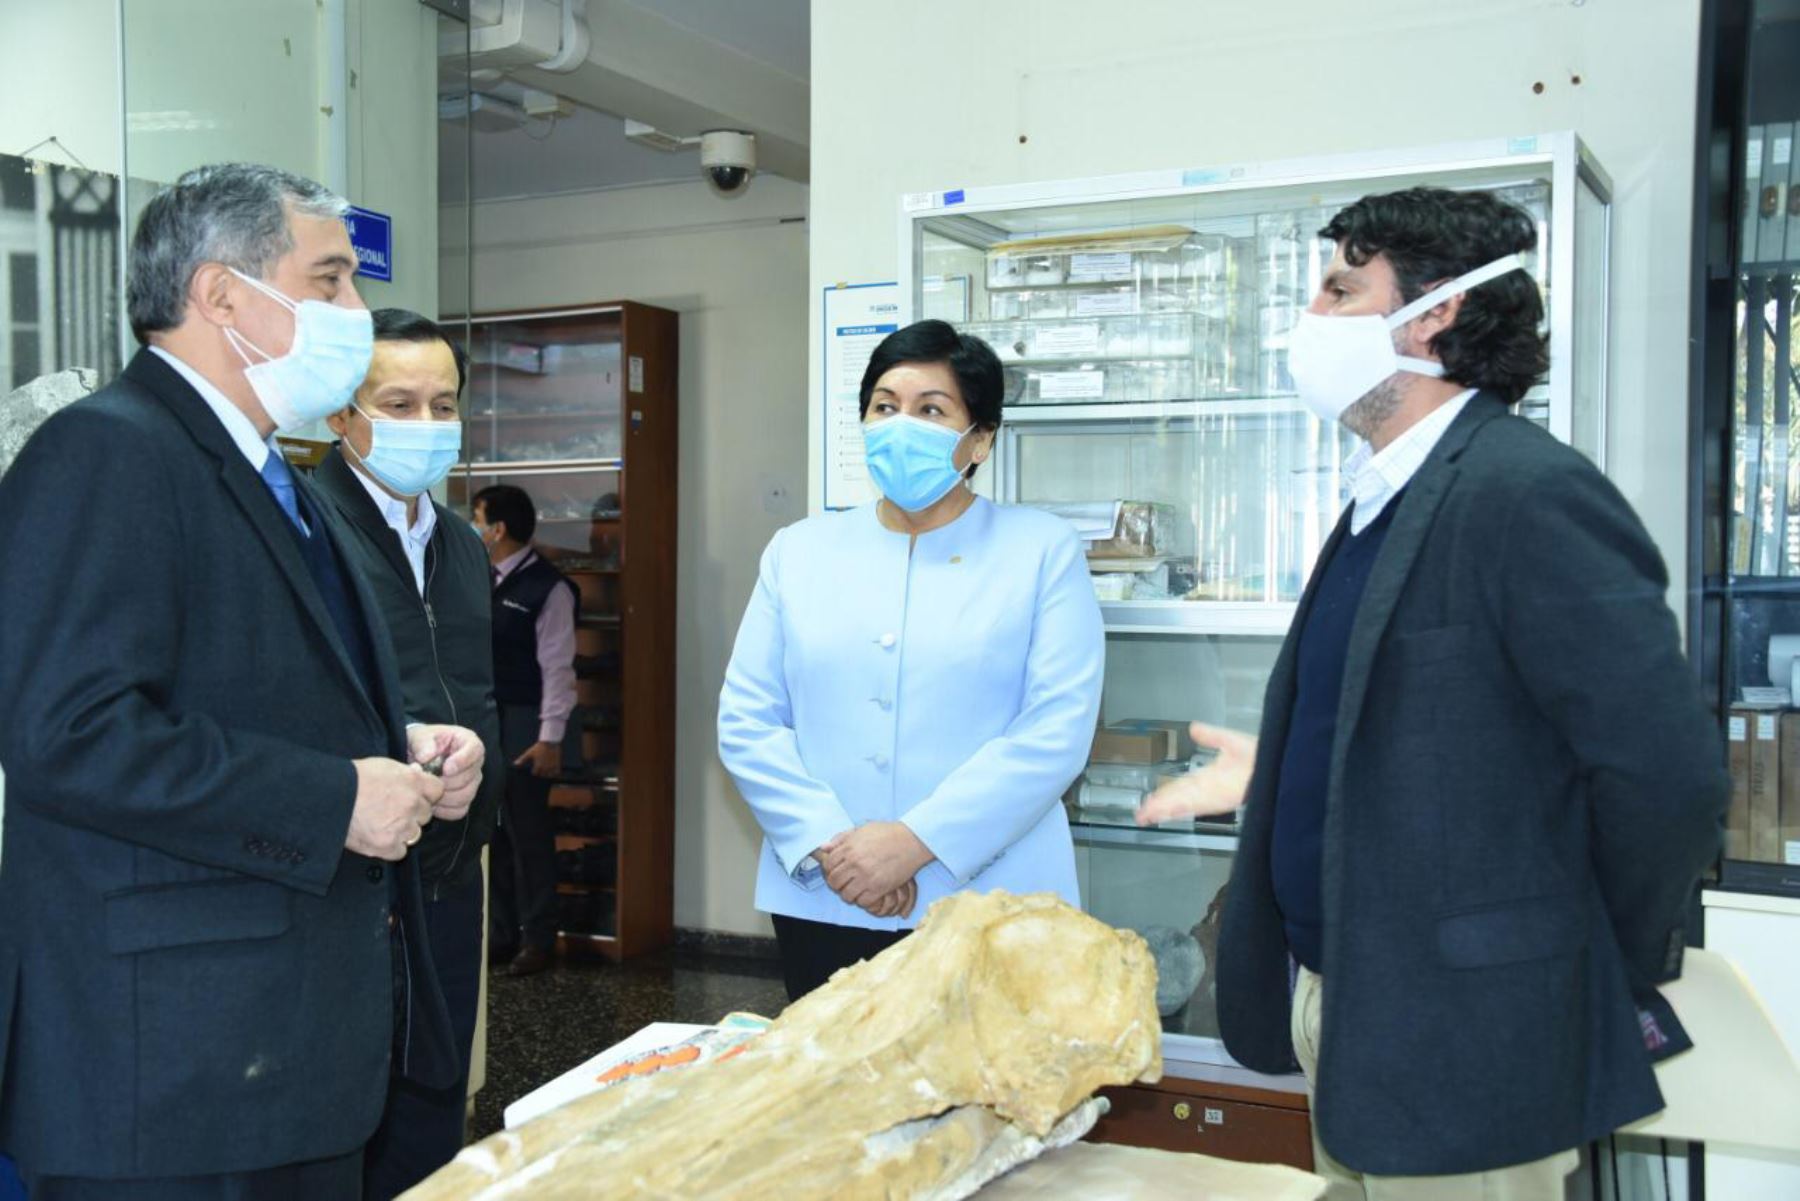 El viceministro de Minas, Augusto Cauti Barrantes, visitó la colección de muestras fósiles del Ingemmet. Foto: ANDINA/Difusión